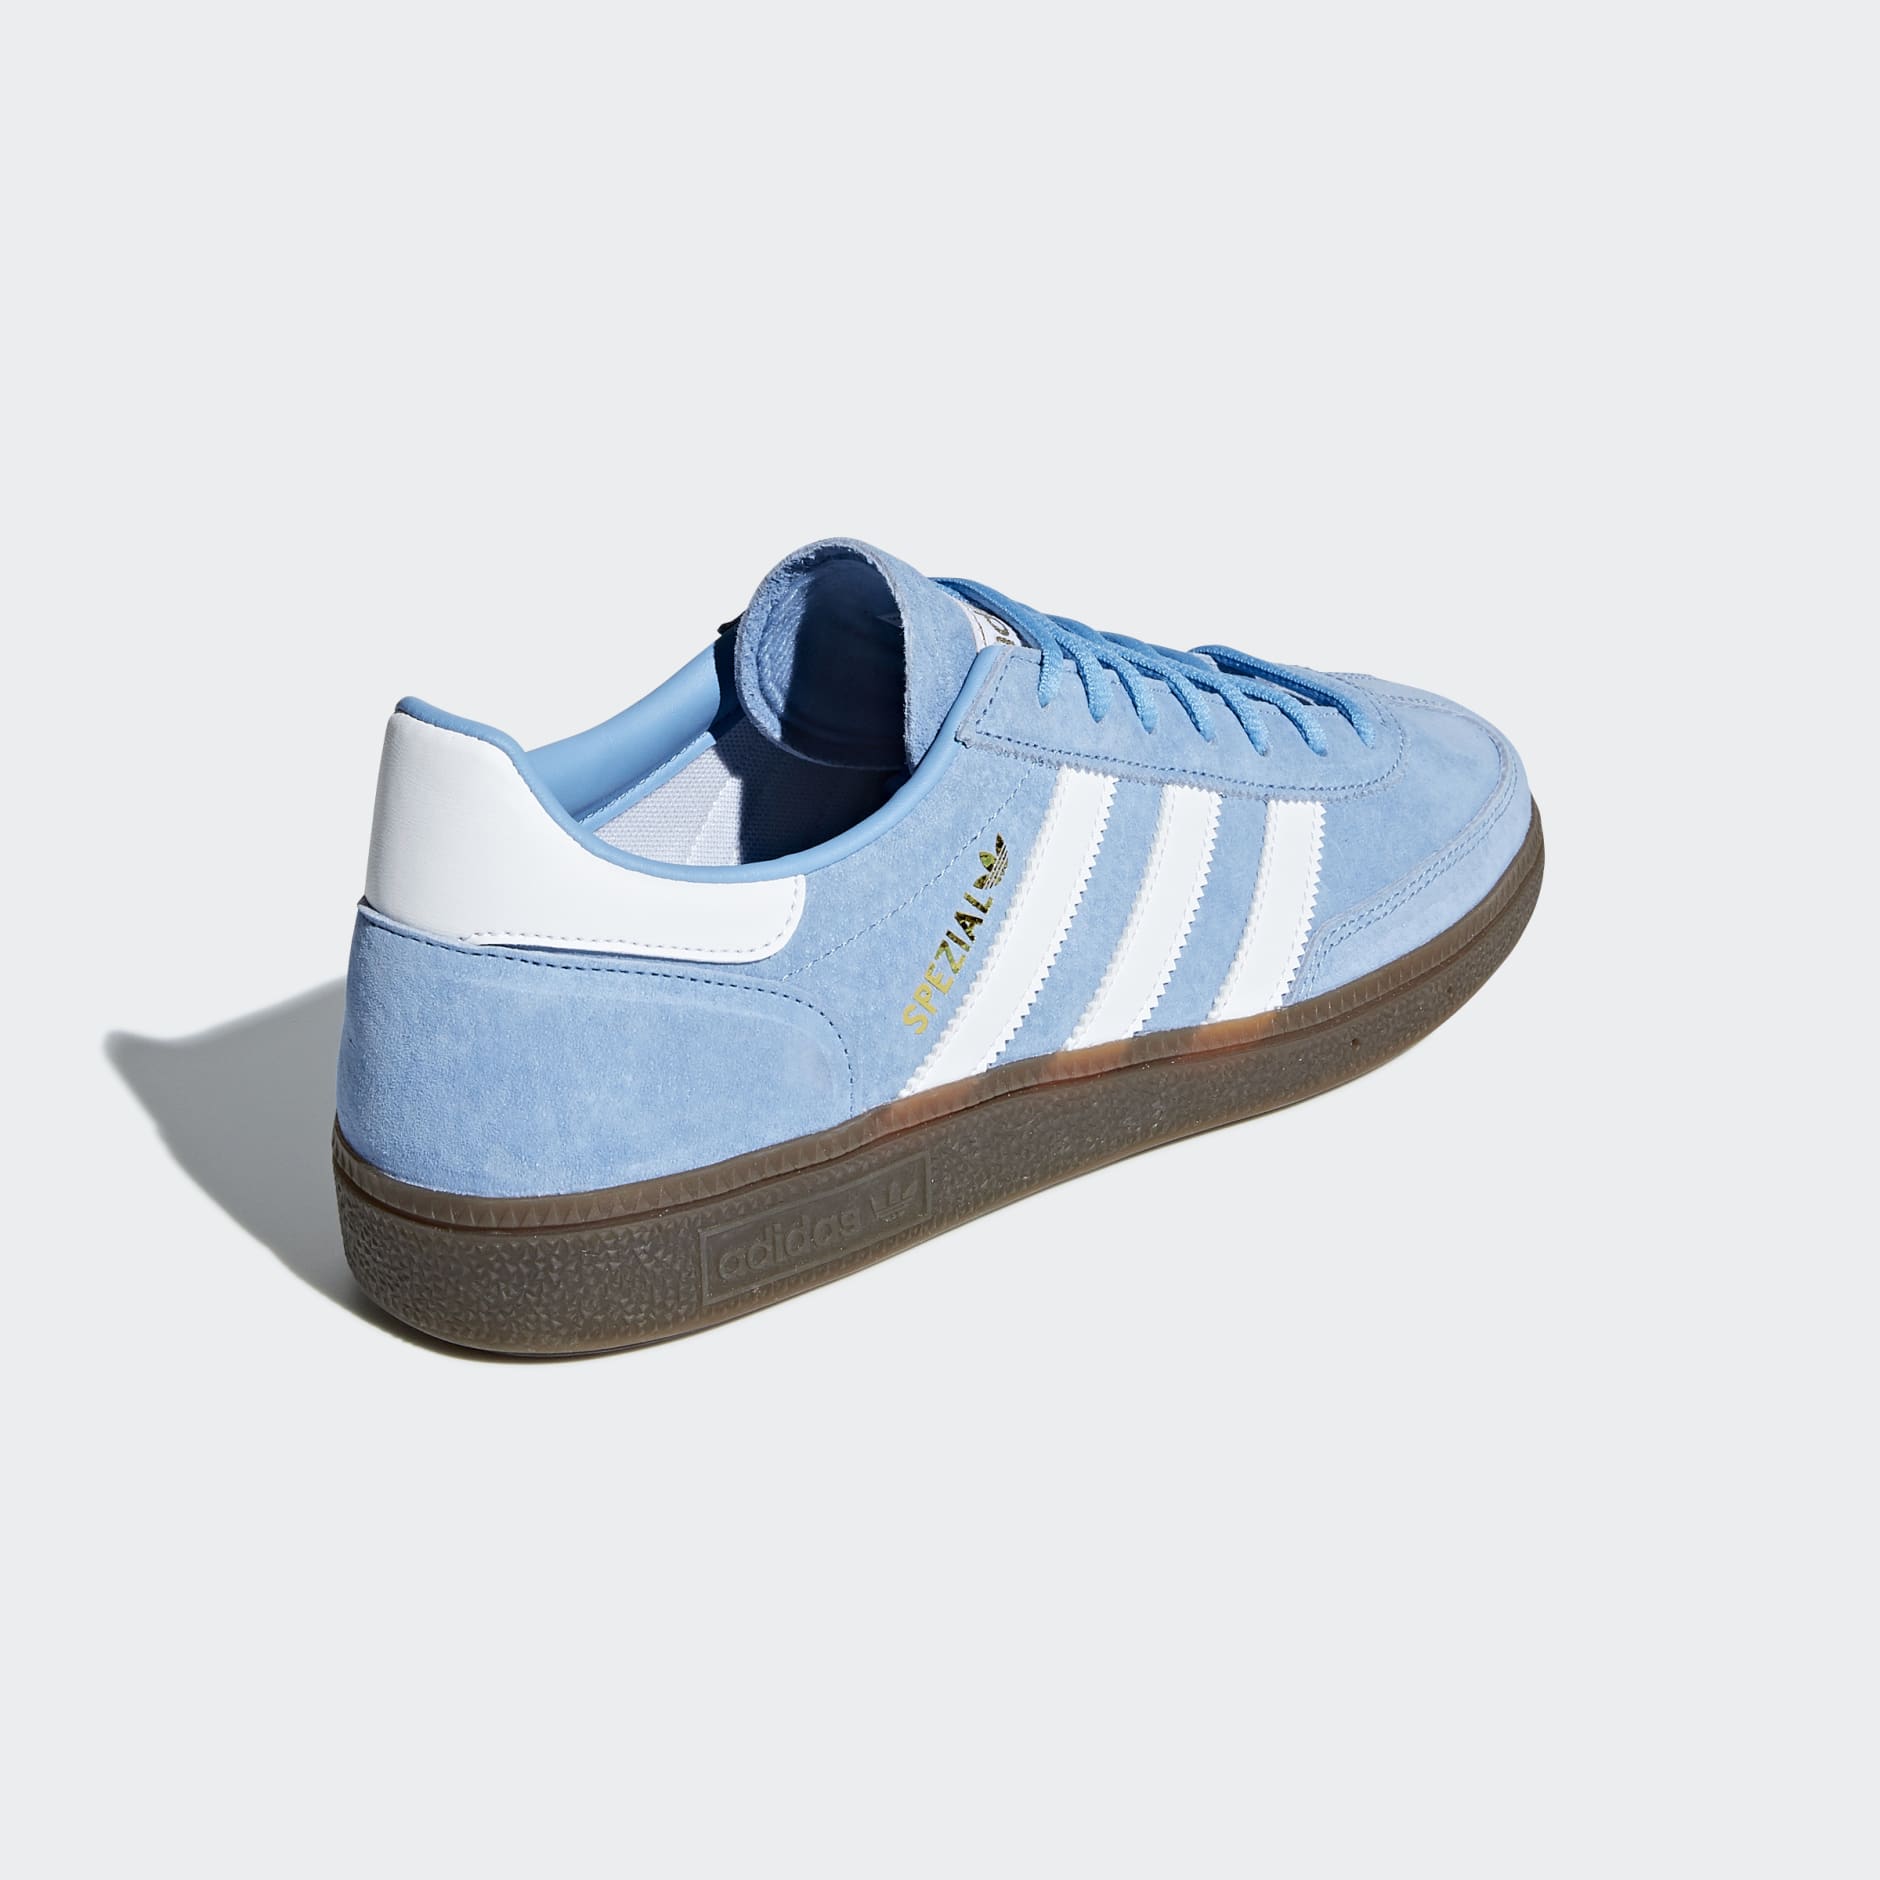 Shoes - Handball Spezial Shoes - Blue | adidas Oman